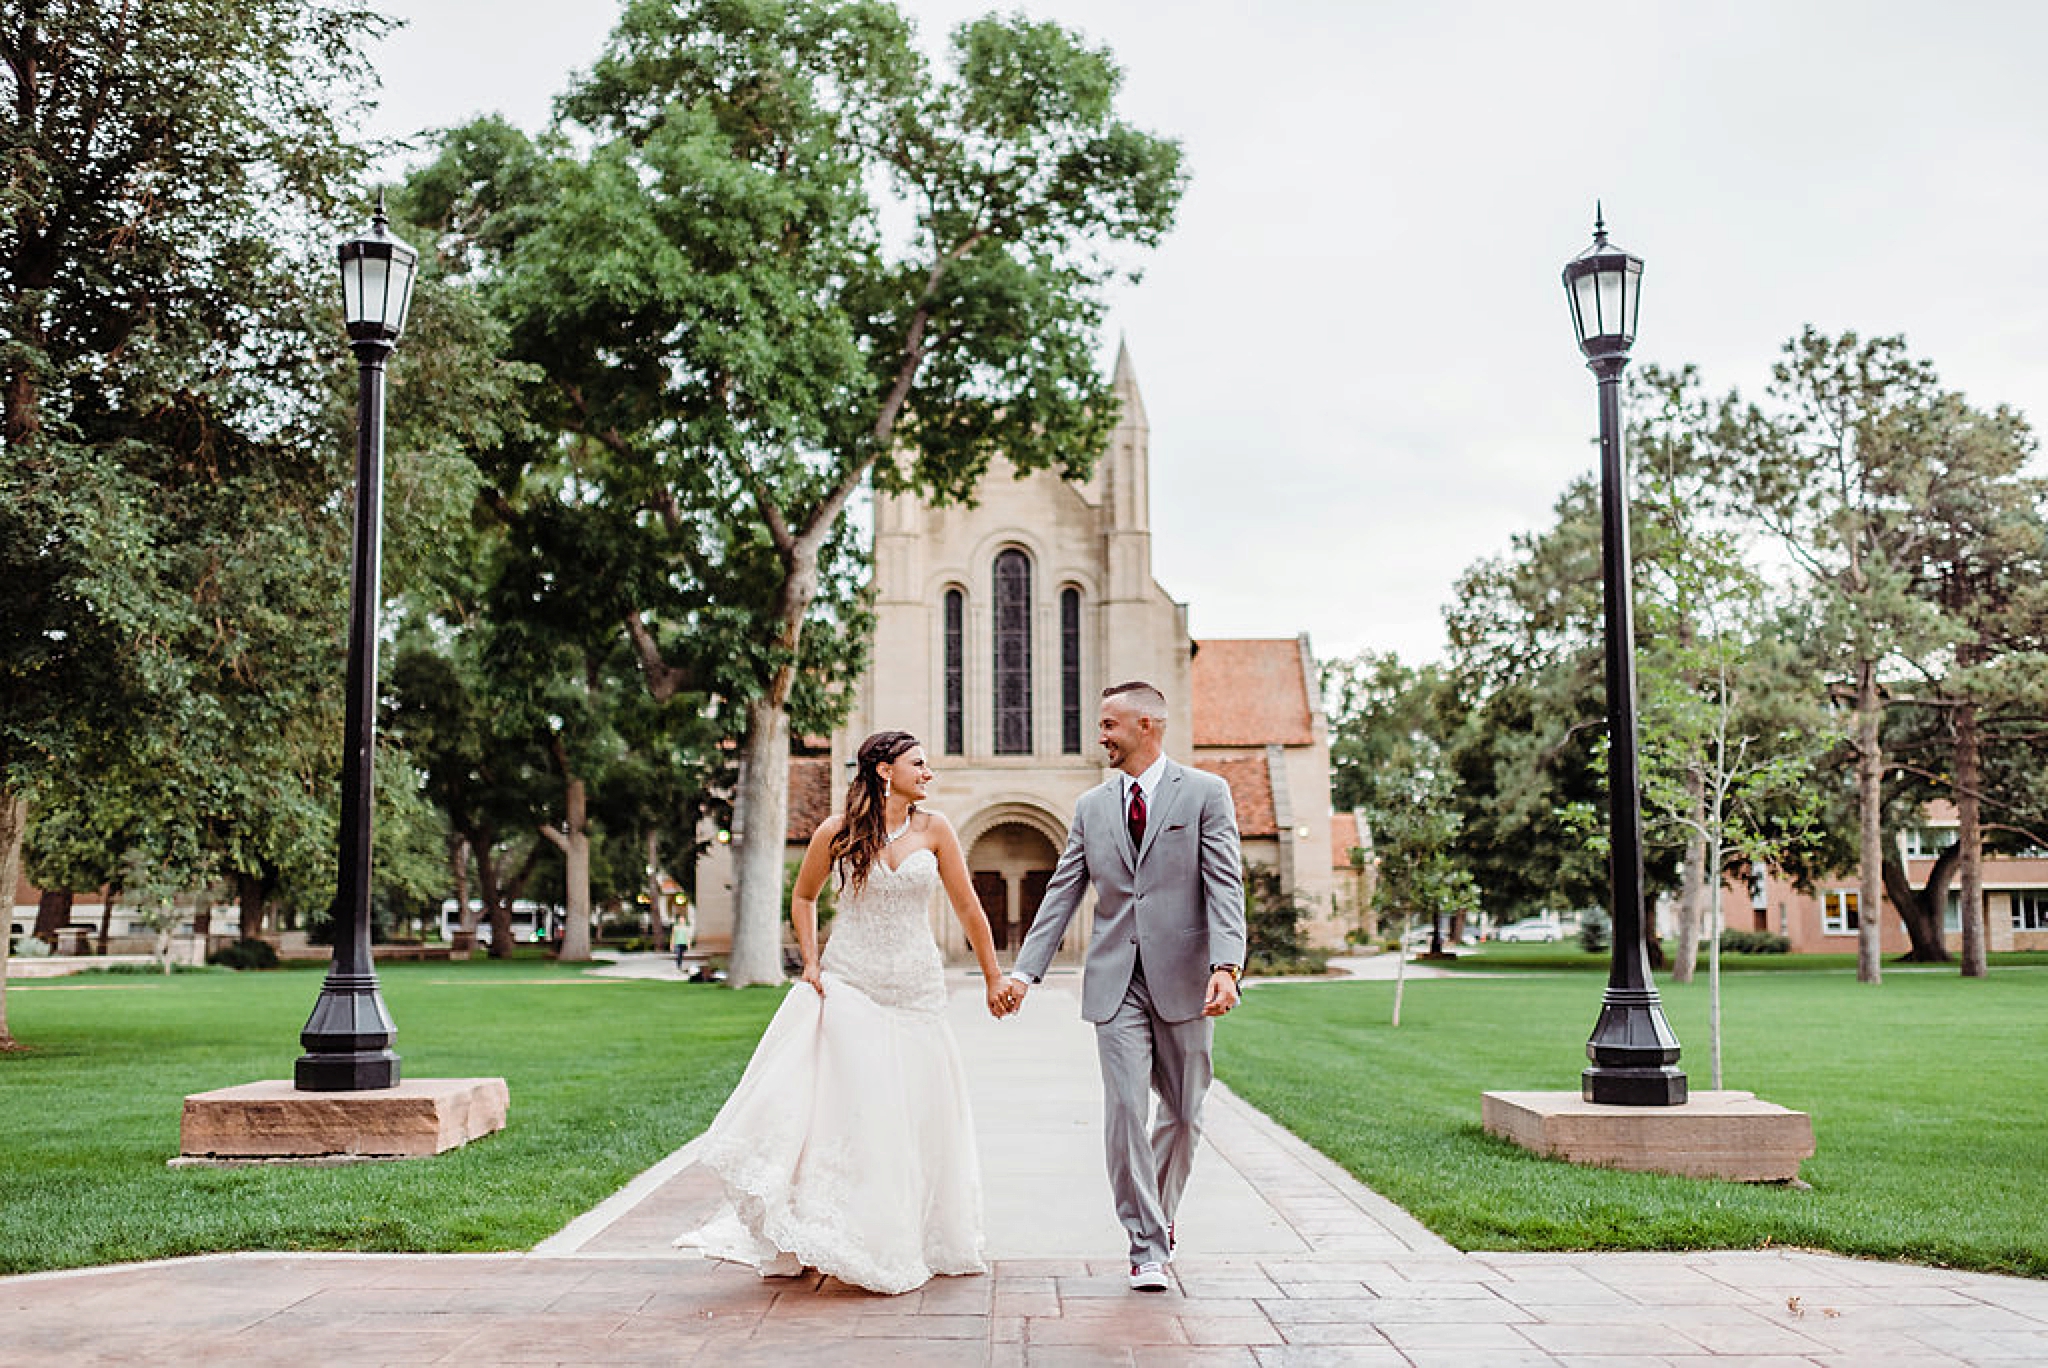 Shove Chapel wedding at Colorado College in Colorado Springs